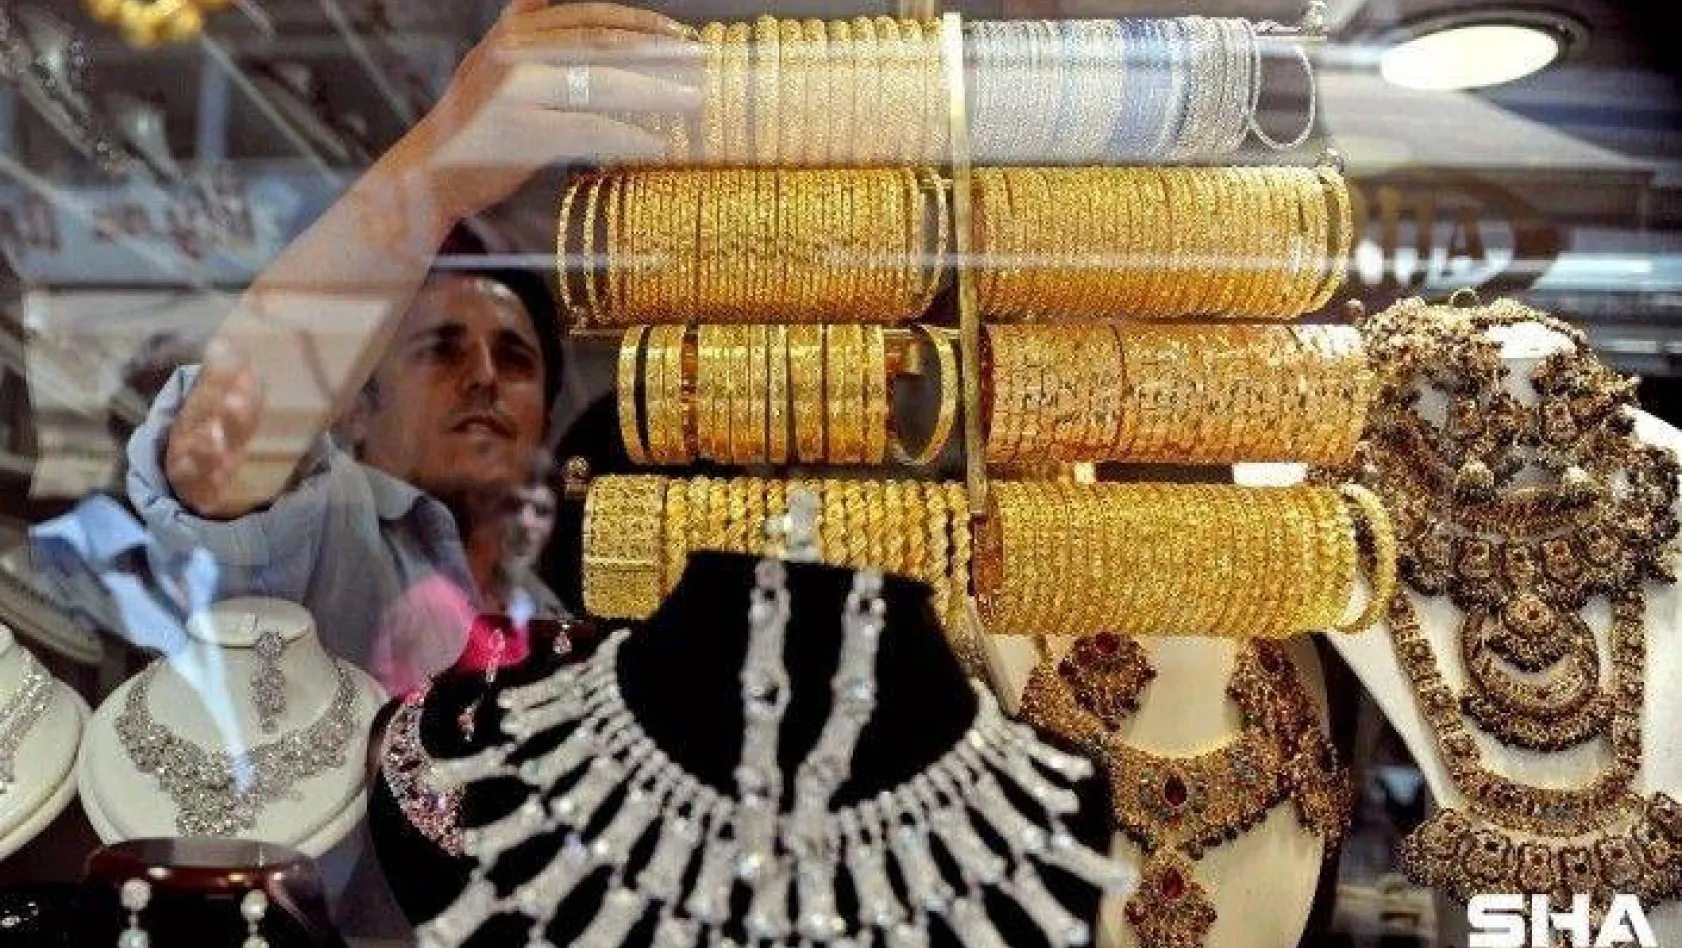 24 ayar külçe altının gram satış fiyatı 485,20 lira oldu